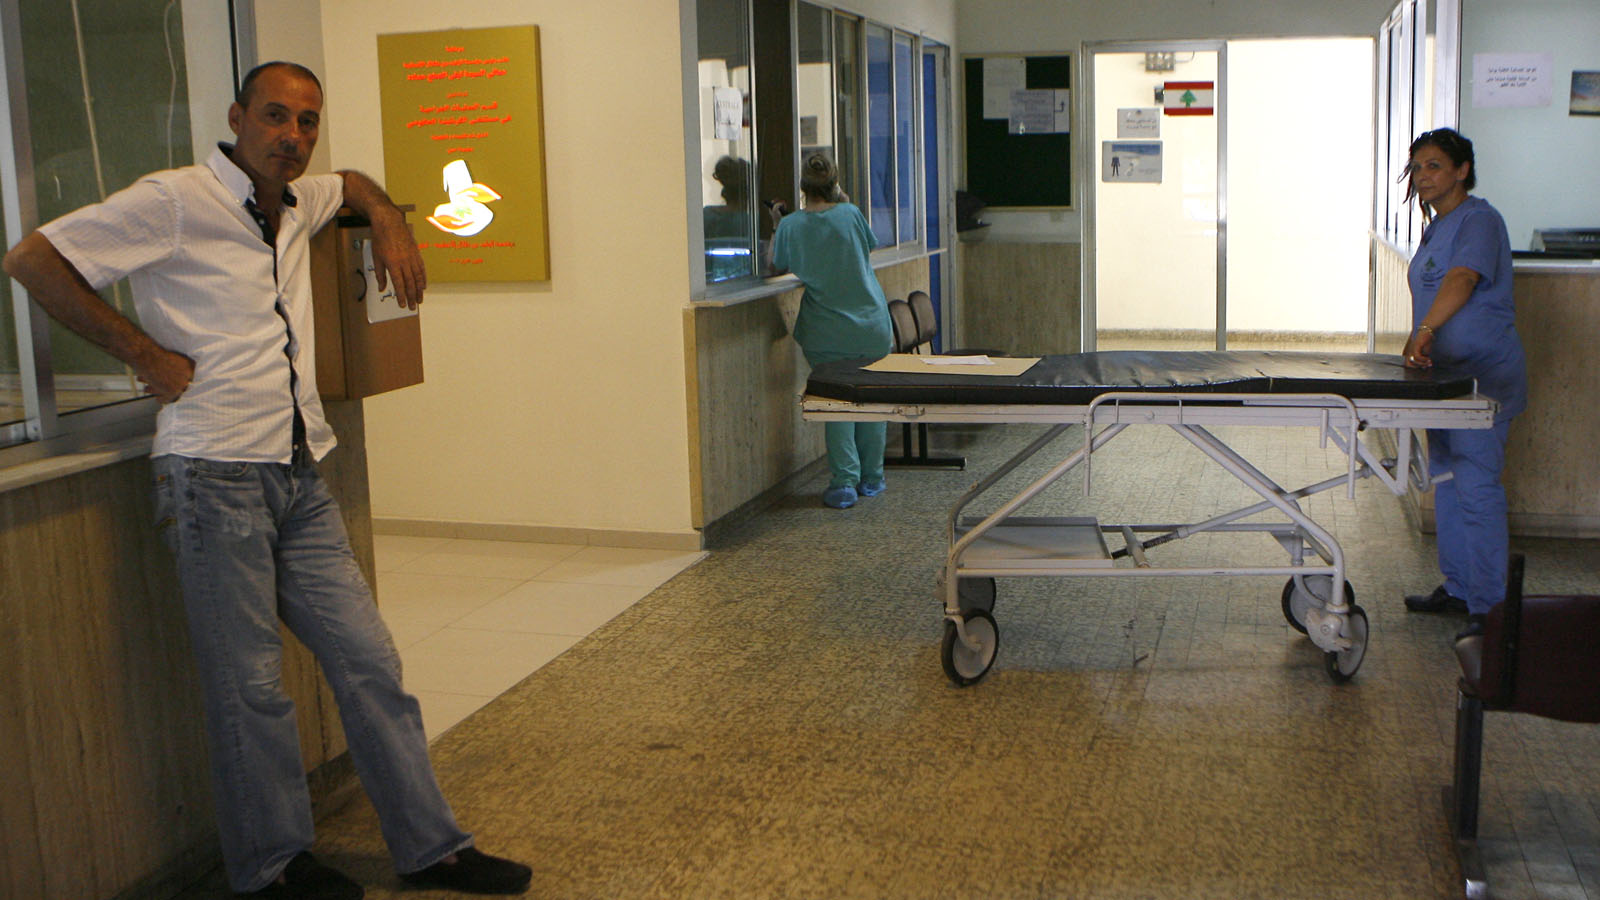 الفحوص والمعاينات الطبيّة بـ3000 ليرة في مستشفى الكرنتينا